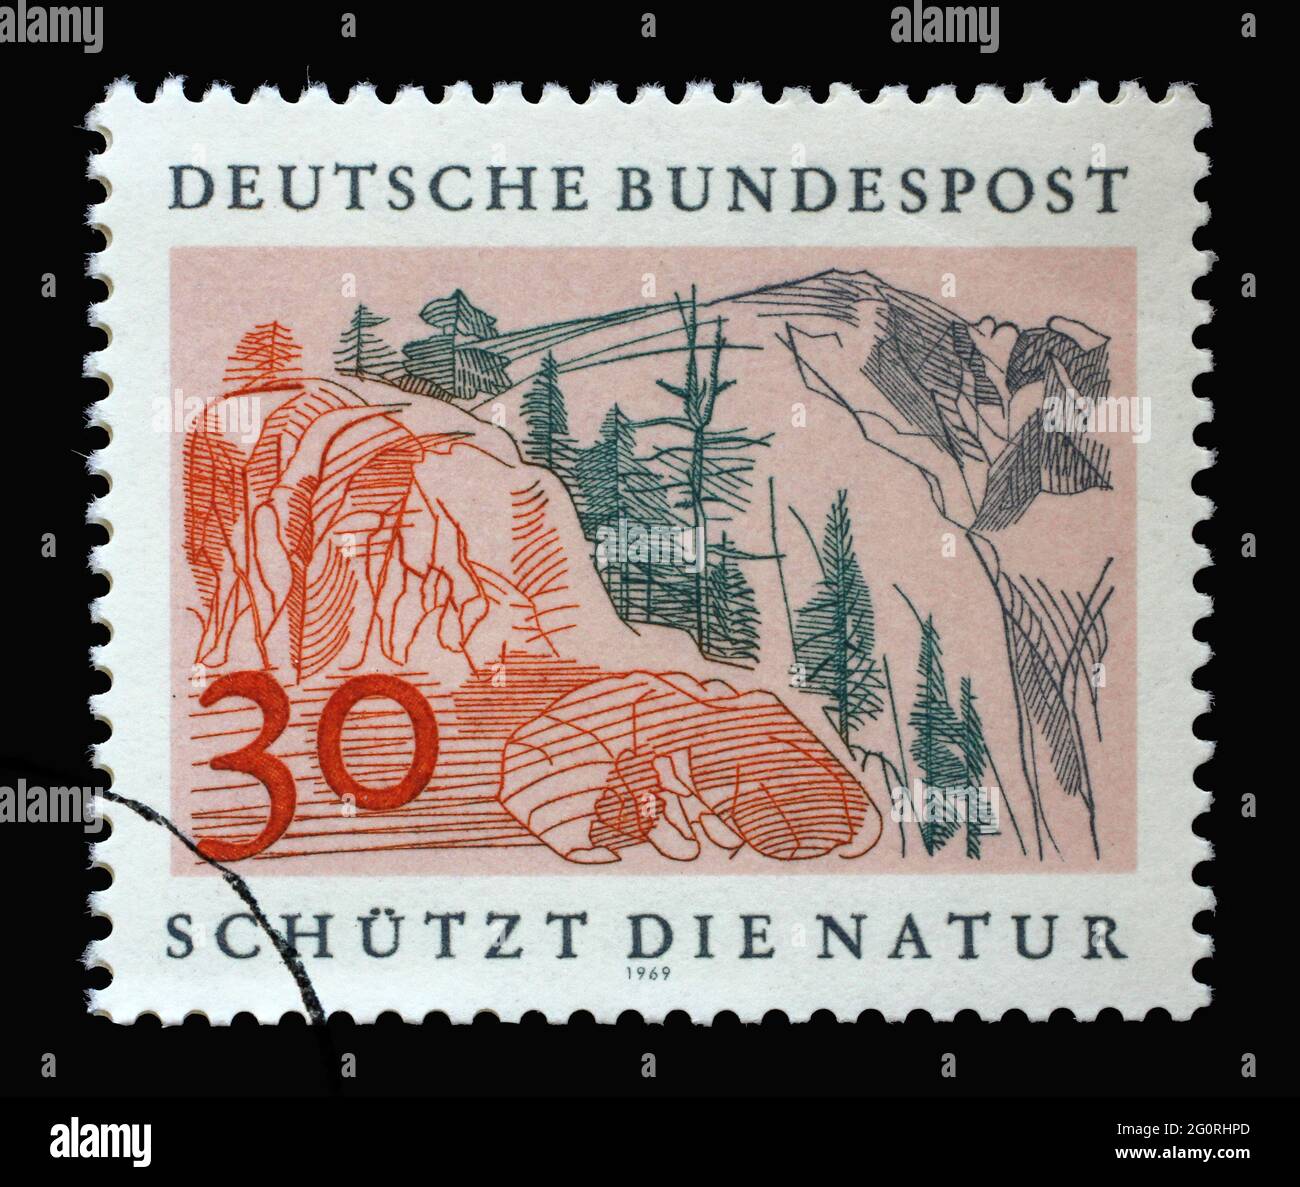 Stempel gedruckt in Deutschland mit einer Landschaft: Hoher Berg, Europäischer Naturschutz Jahr, um 1969 Stockfoto